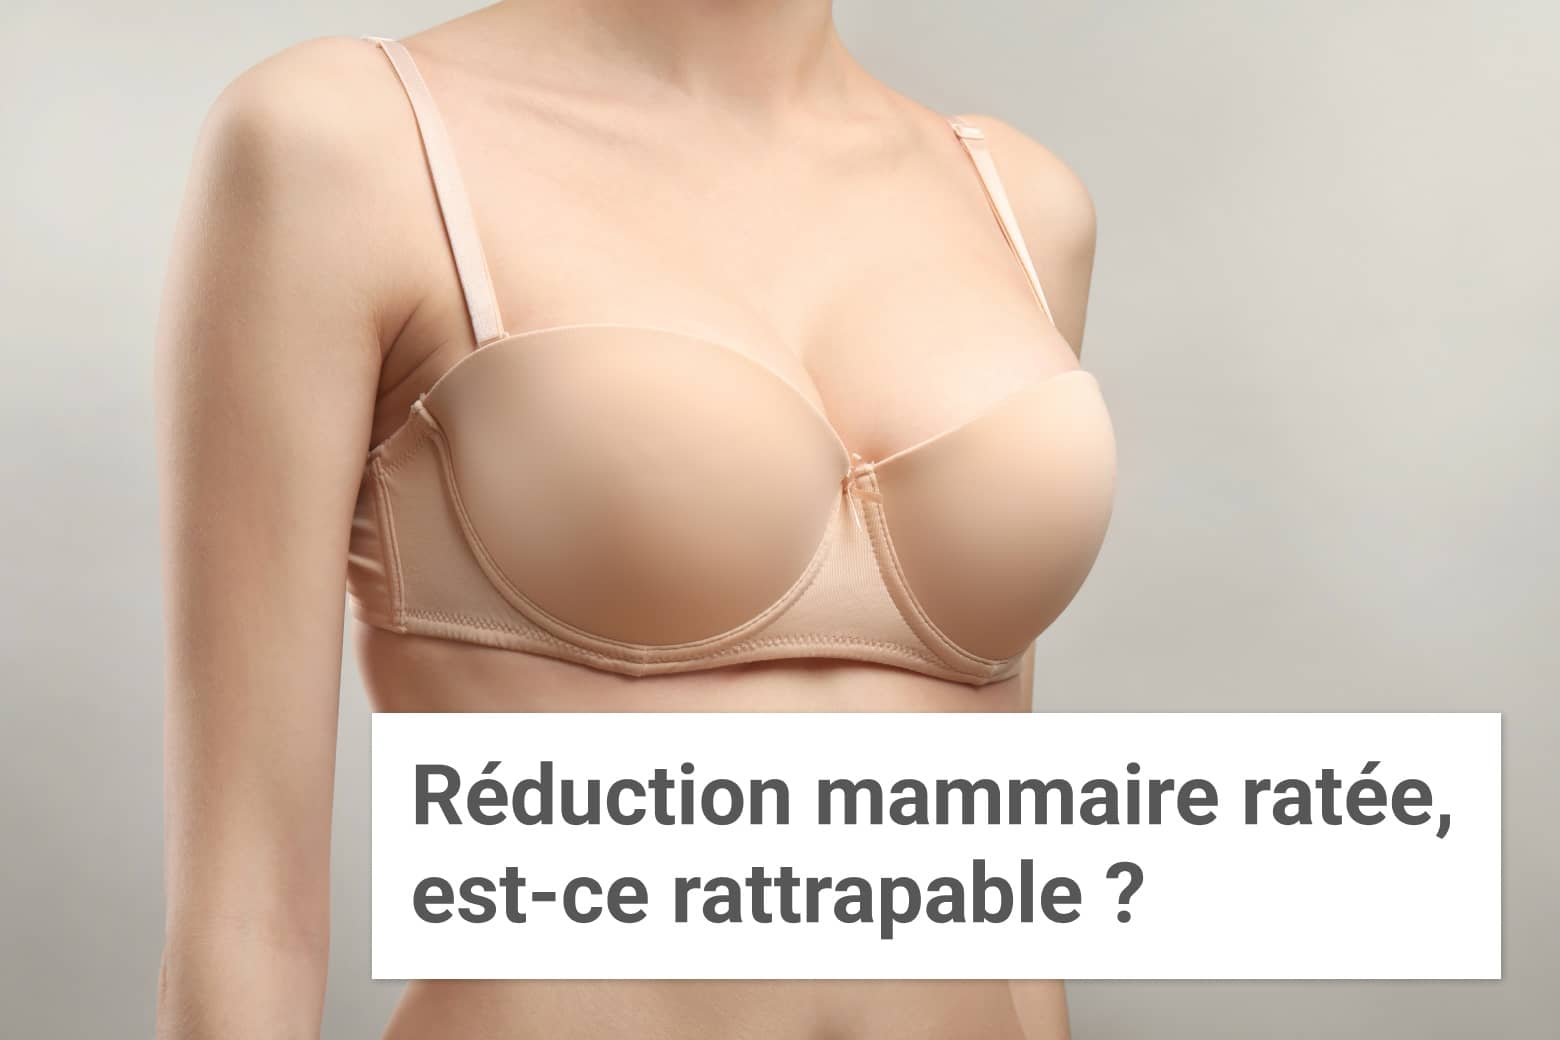 Réduction mammaire ratée, est-ce rattrapable ? | Institut du Sein | Paris